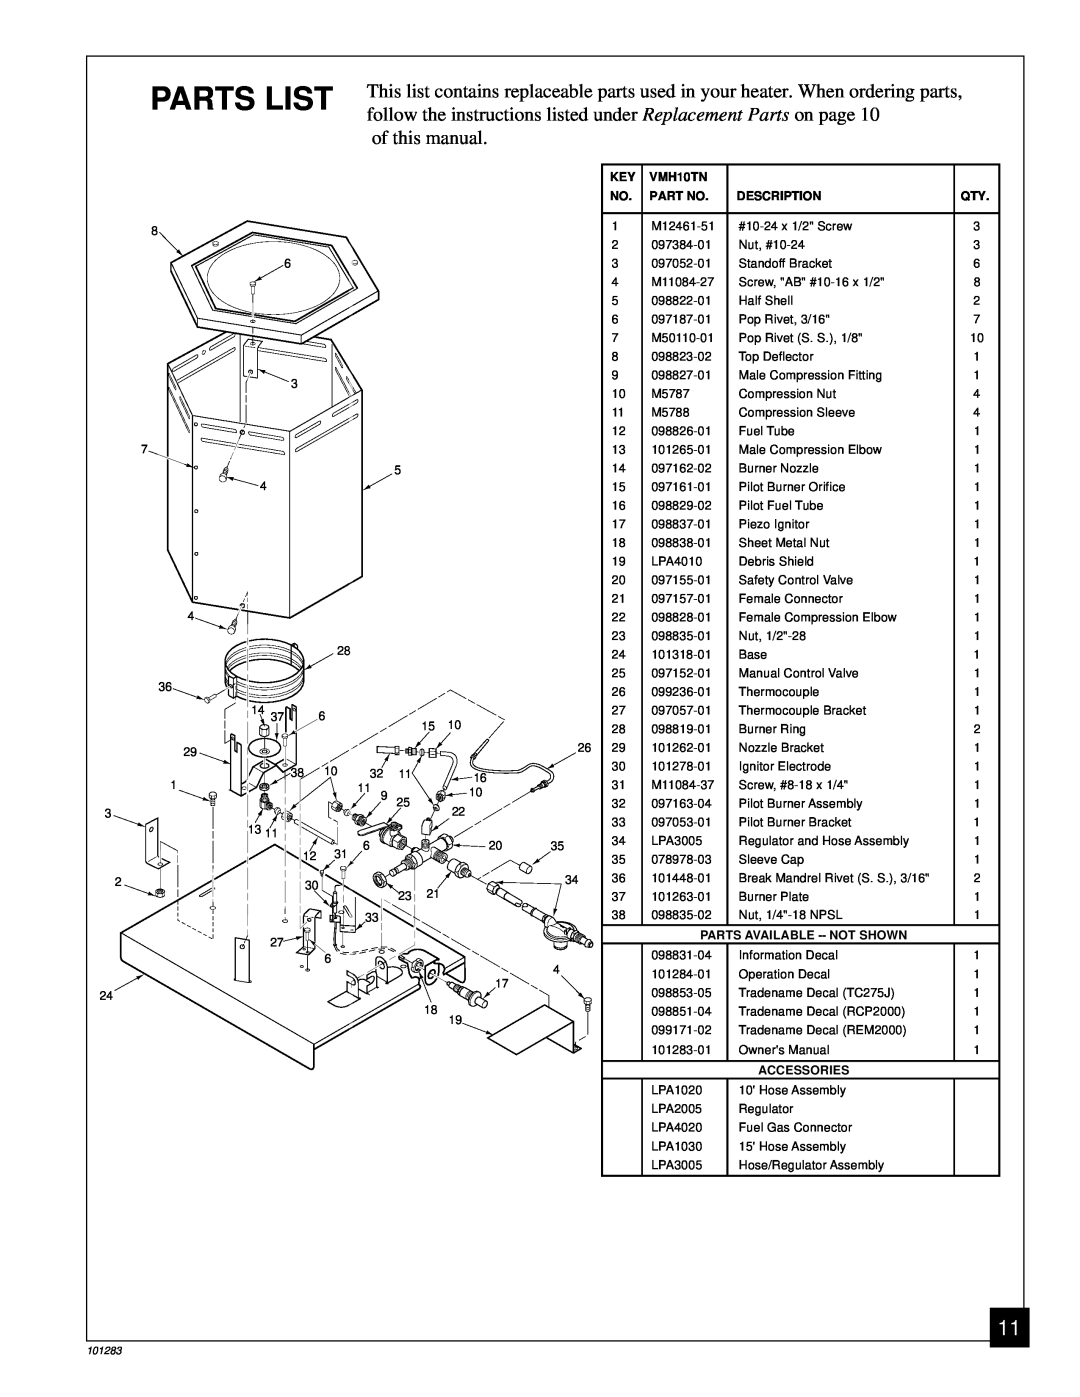 Desa RCP2000, TC275J, REM2000 owner manual Parts List 